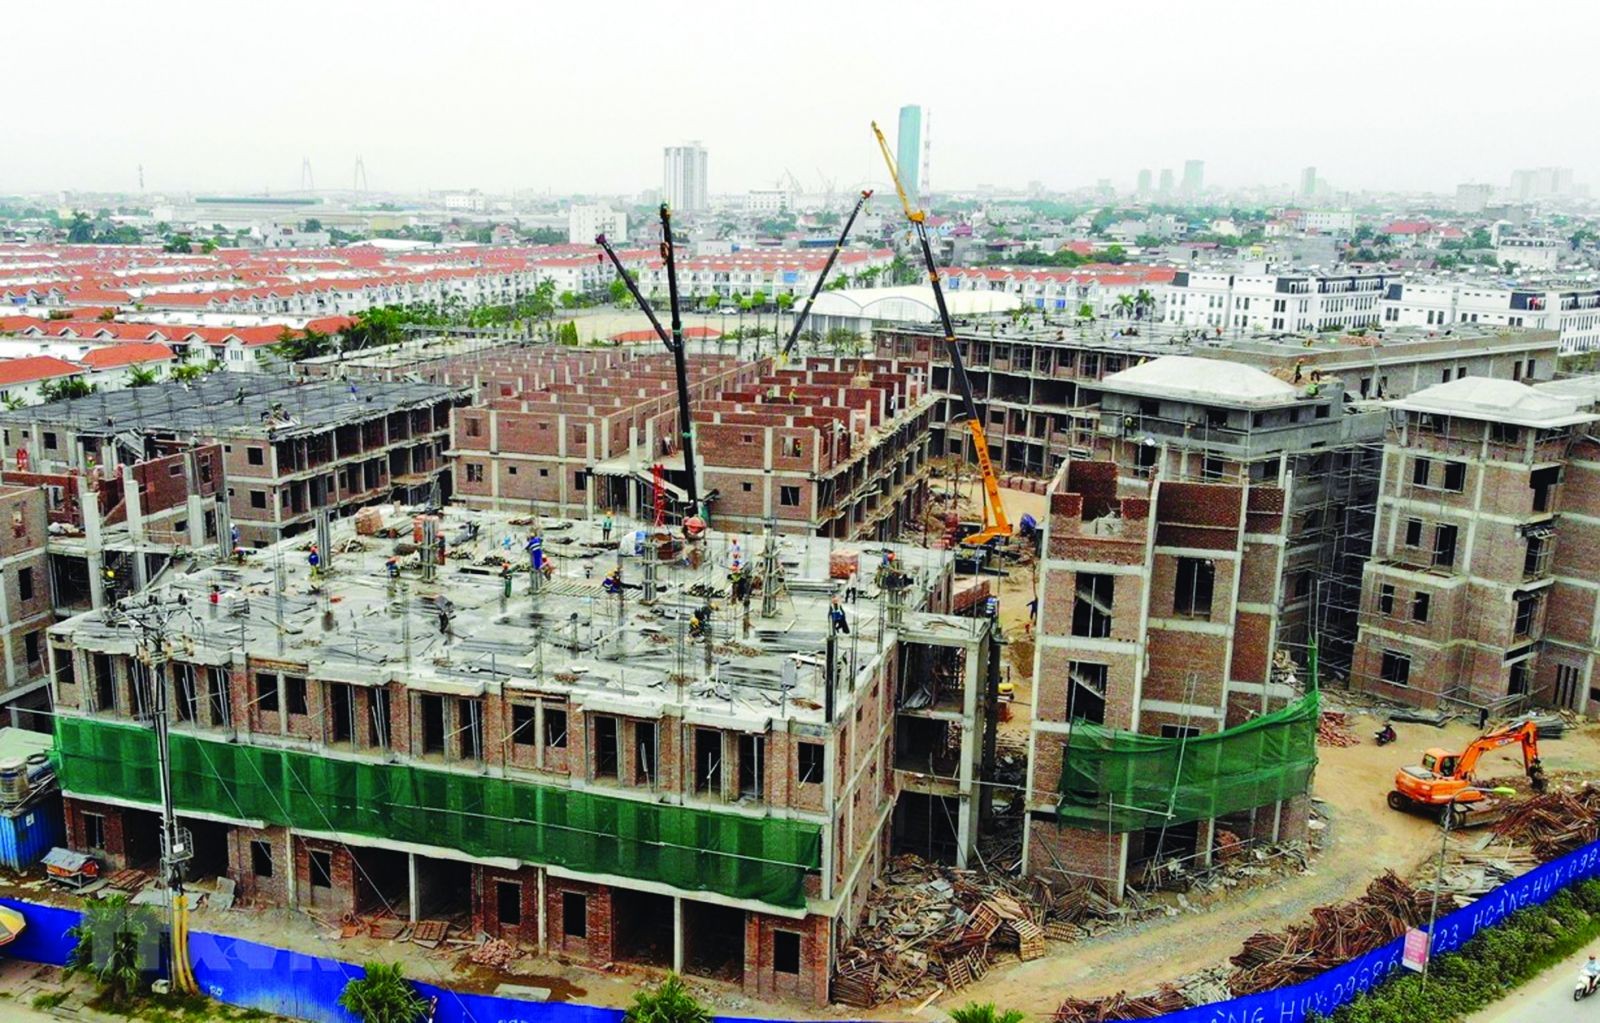 
Khu nhà ở giá rẻ Pruksa do Công ty Cổ phần Đầu tư Dịch vụ tài chính Hoàng Huy đầu tư xây dựng tại xã An Đồng, huyện An Dương, Hải Phòng.
